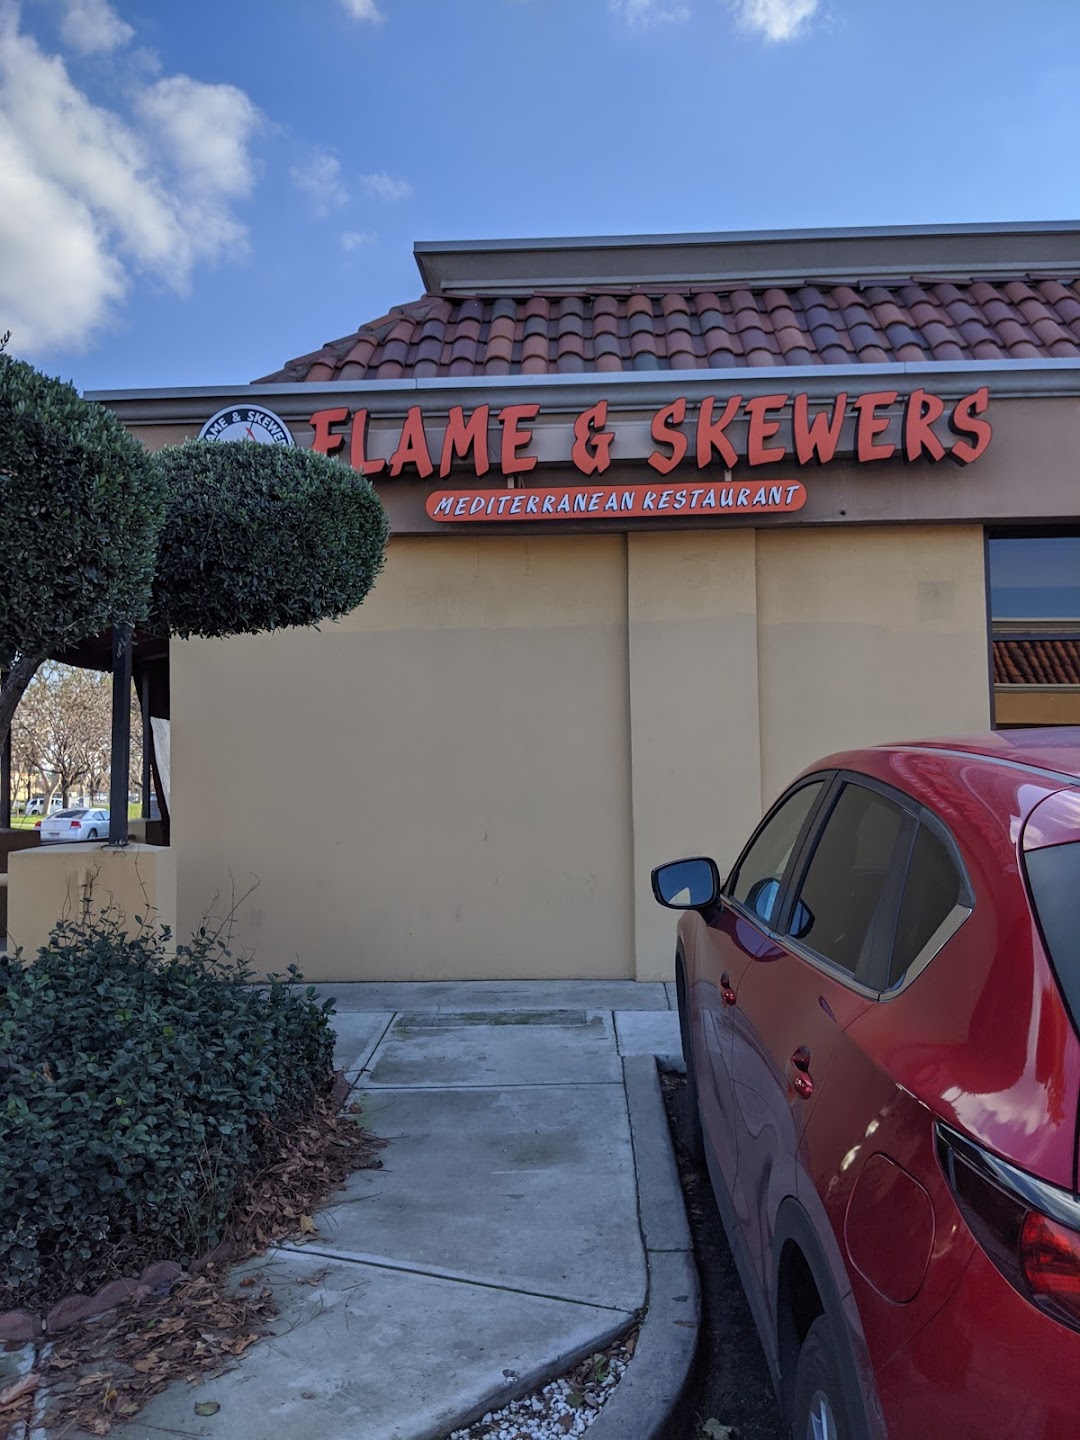 Flame & Skewers Mediterranean Restaurant